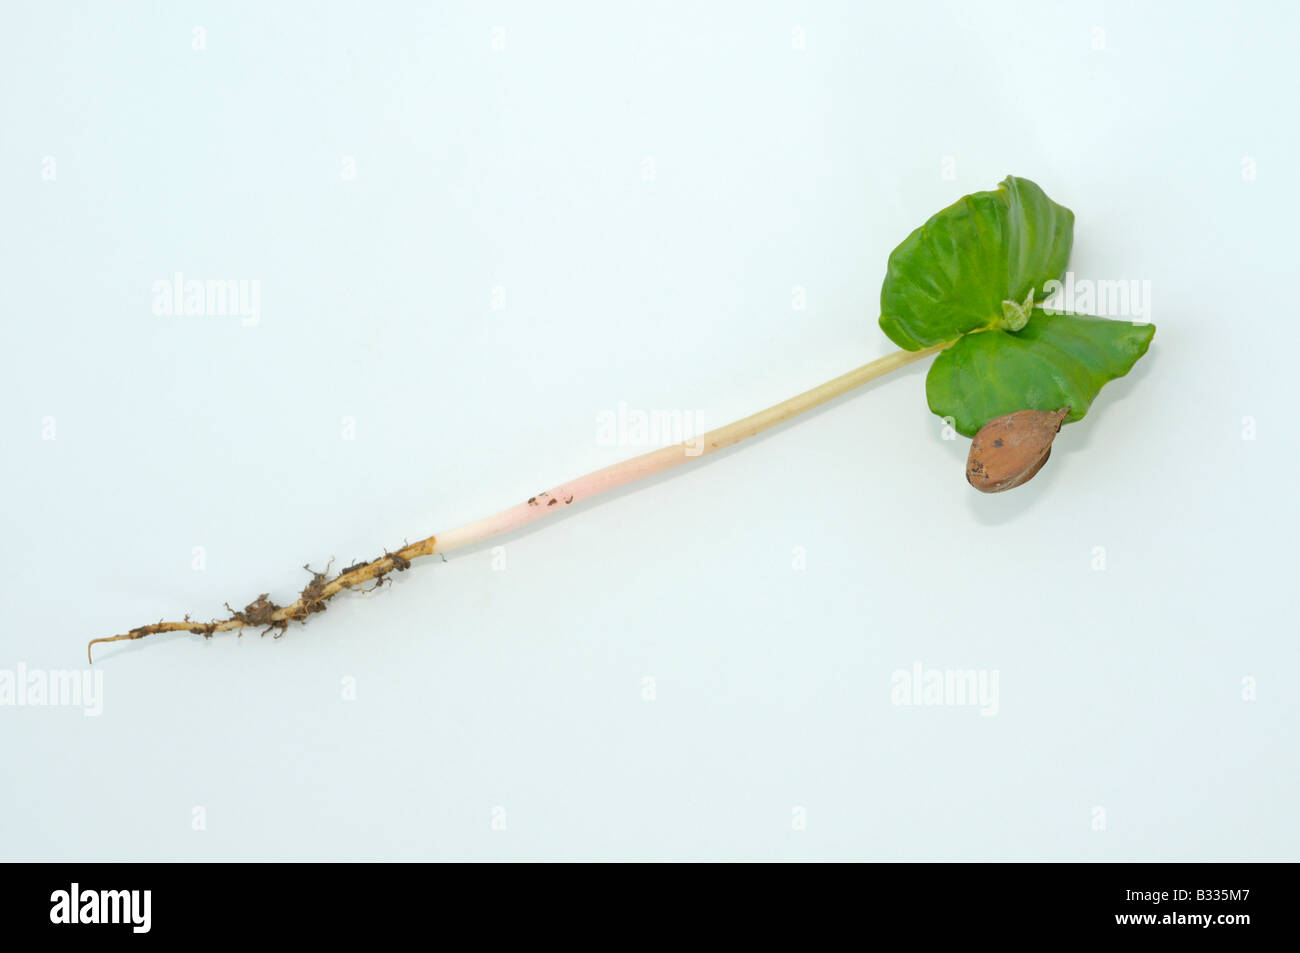 Hêtre européen, le hêtre commun (Fagus sylvatica). Avec des semis de graines racine feuilles et reste de hêtre écrou, studio photo Banque D'Images